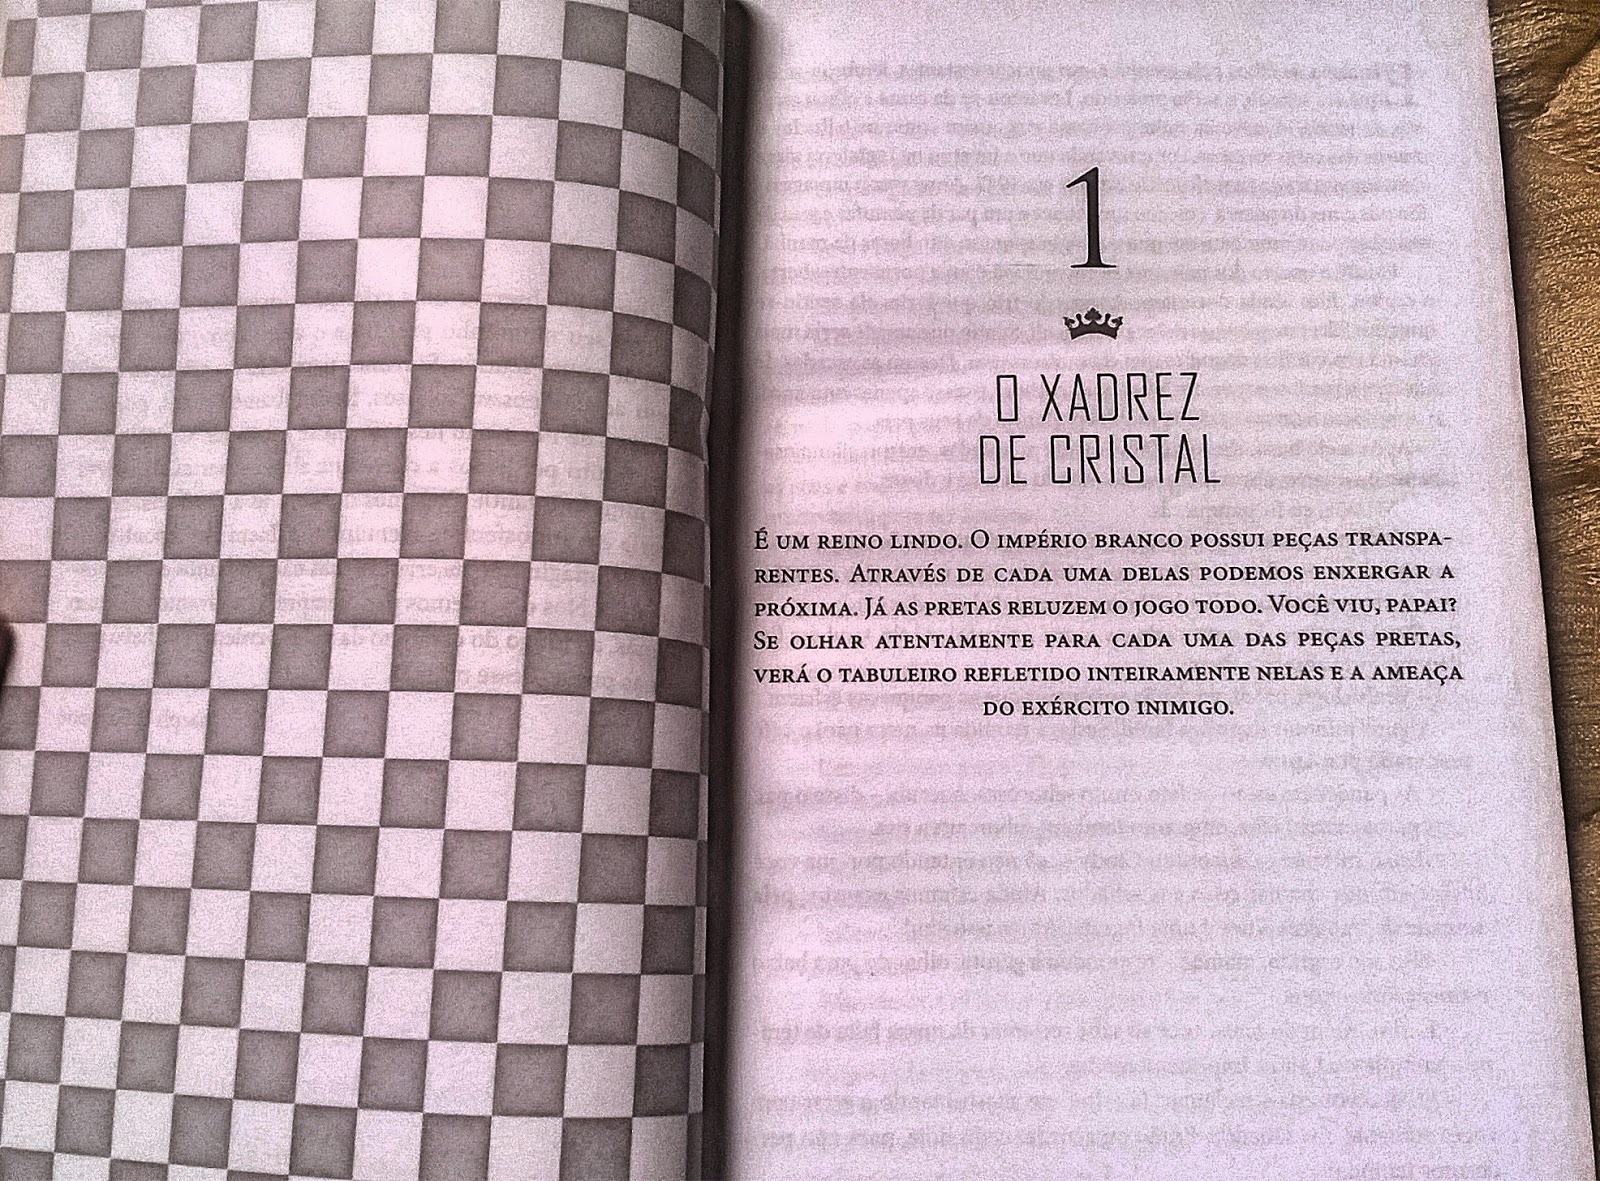 Livro Jogando Xadrez com os Anjos - Livros e revistas - Boa Vista, Curitiba  1109137603